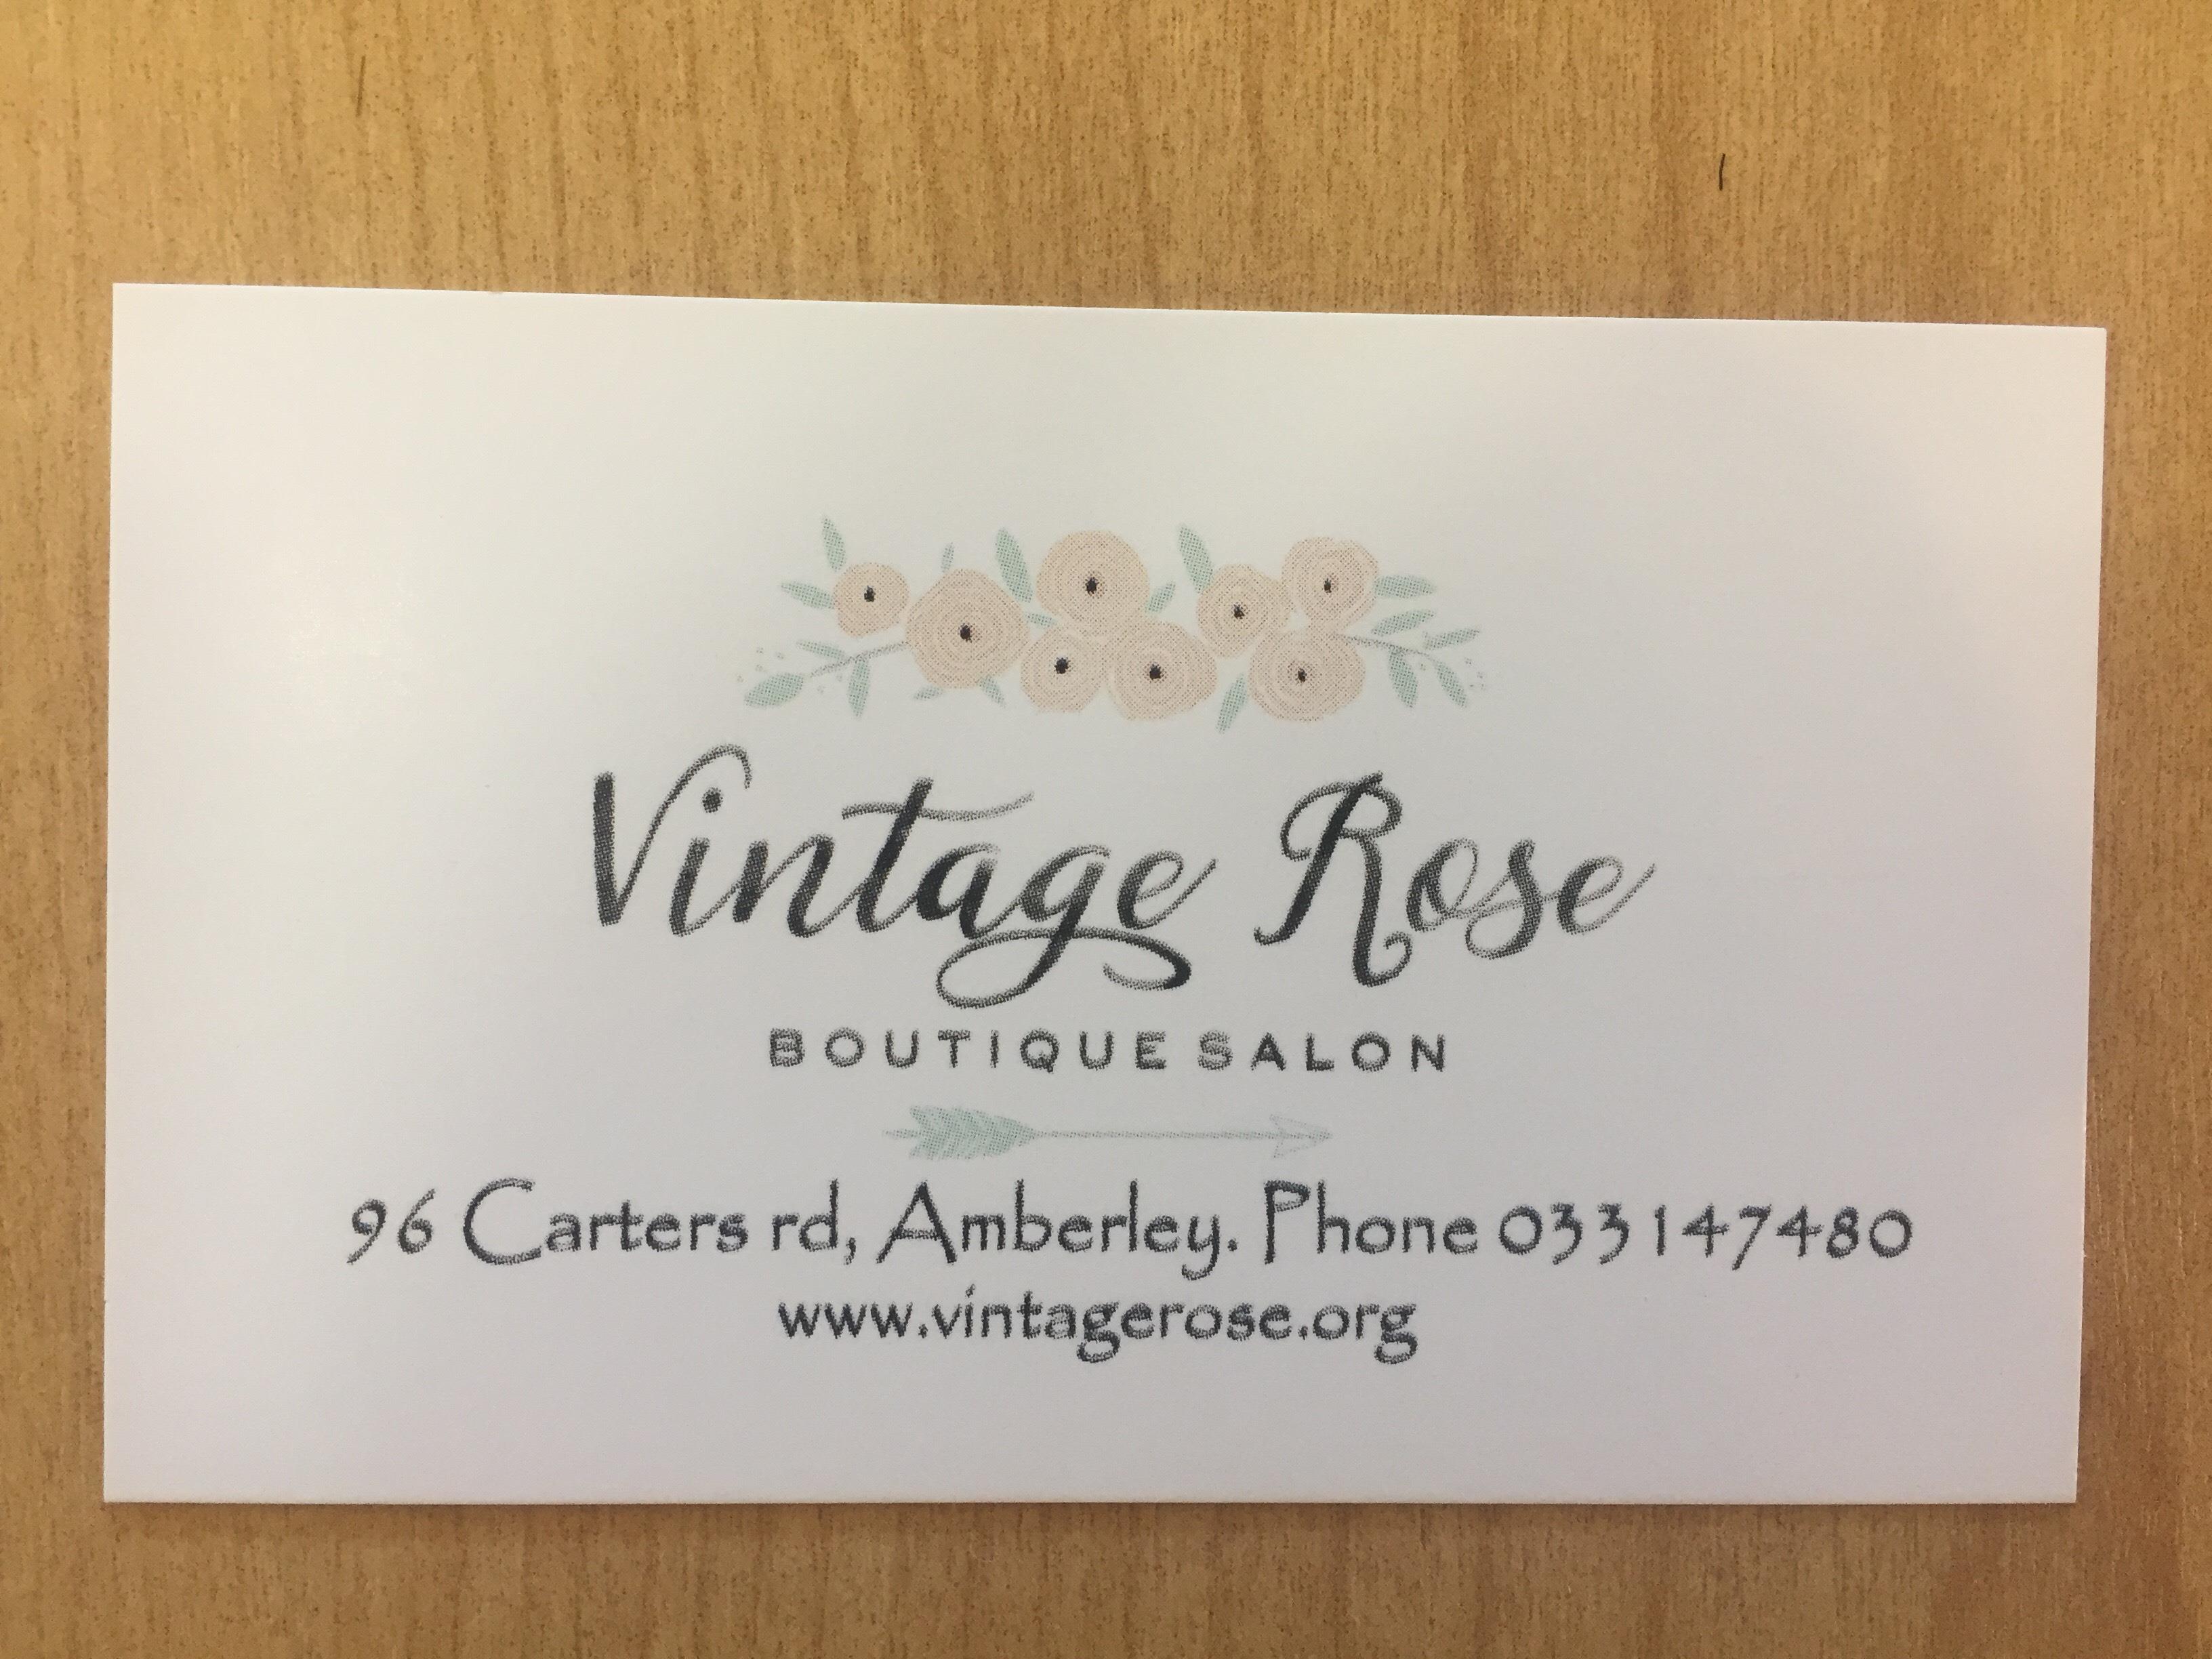 Vintage Rose Boutique Salon